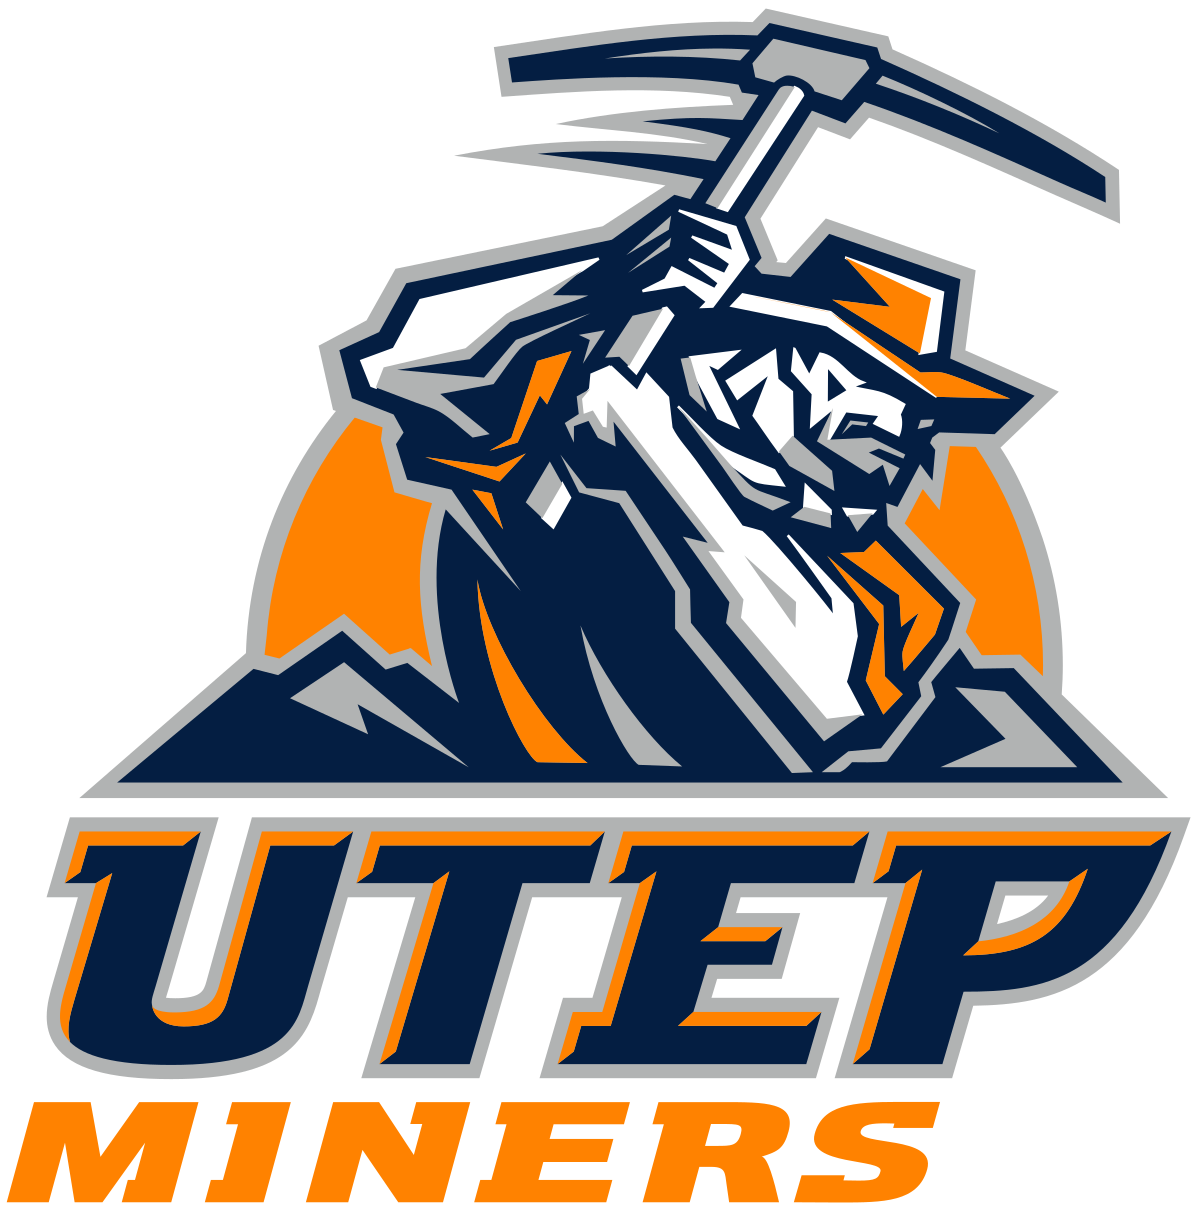 UTEP logo